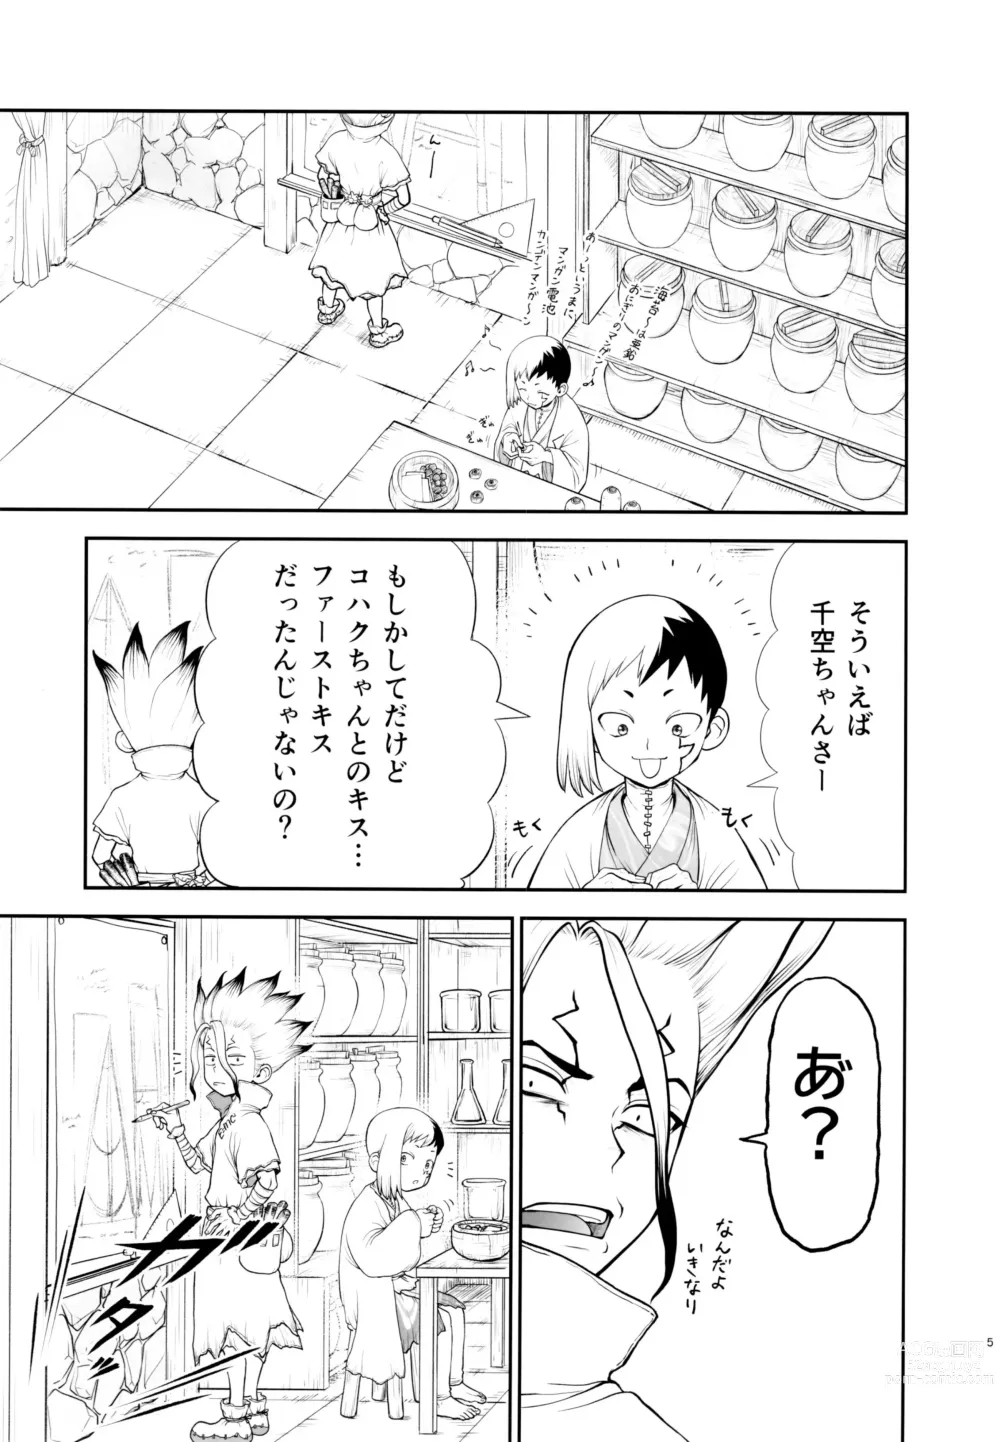 Page 5 of doujinshi Kimi no Hajimete wa Dare nandai?